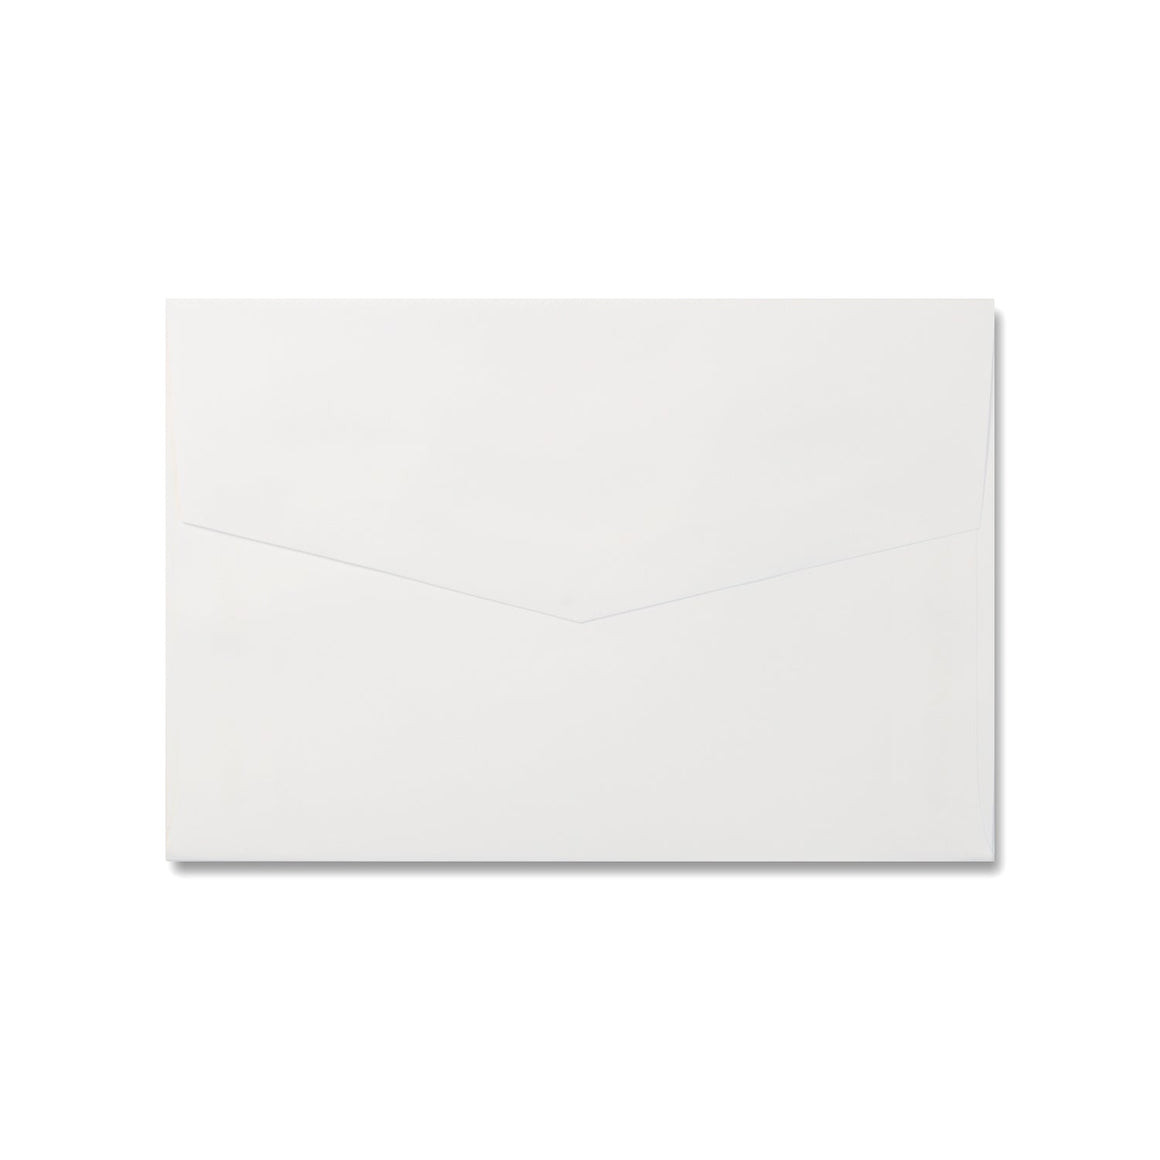 Marshmallow White C6 Envelopes for Invitations